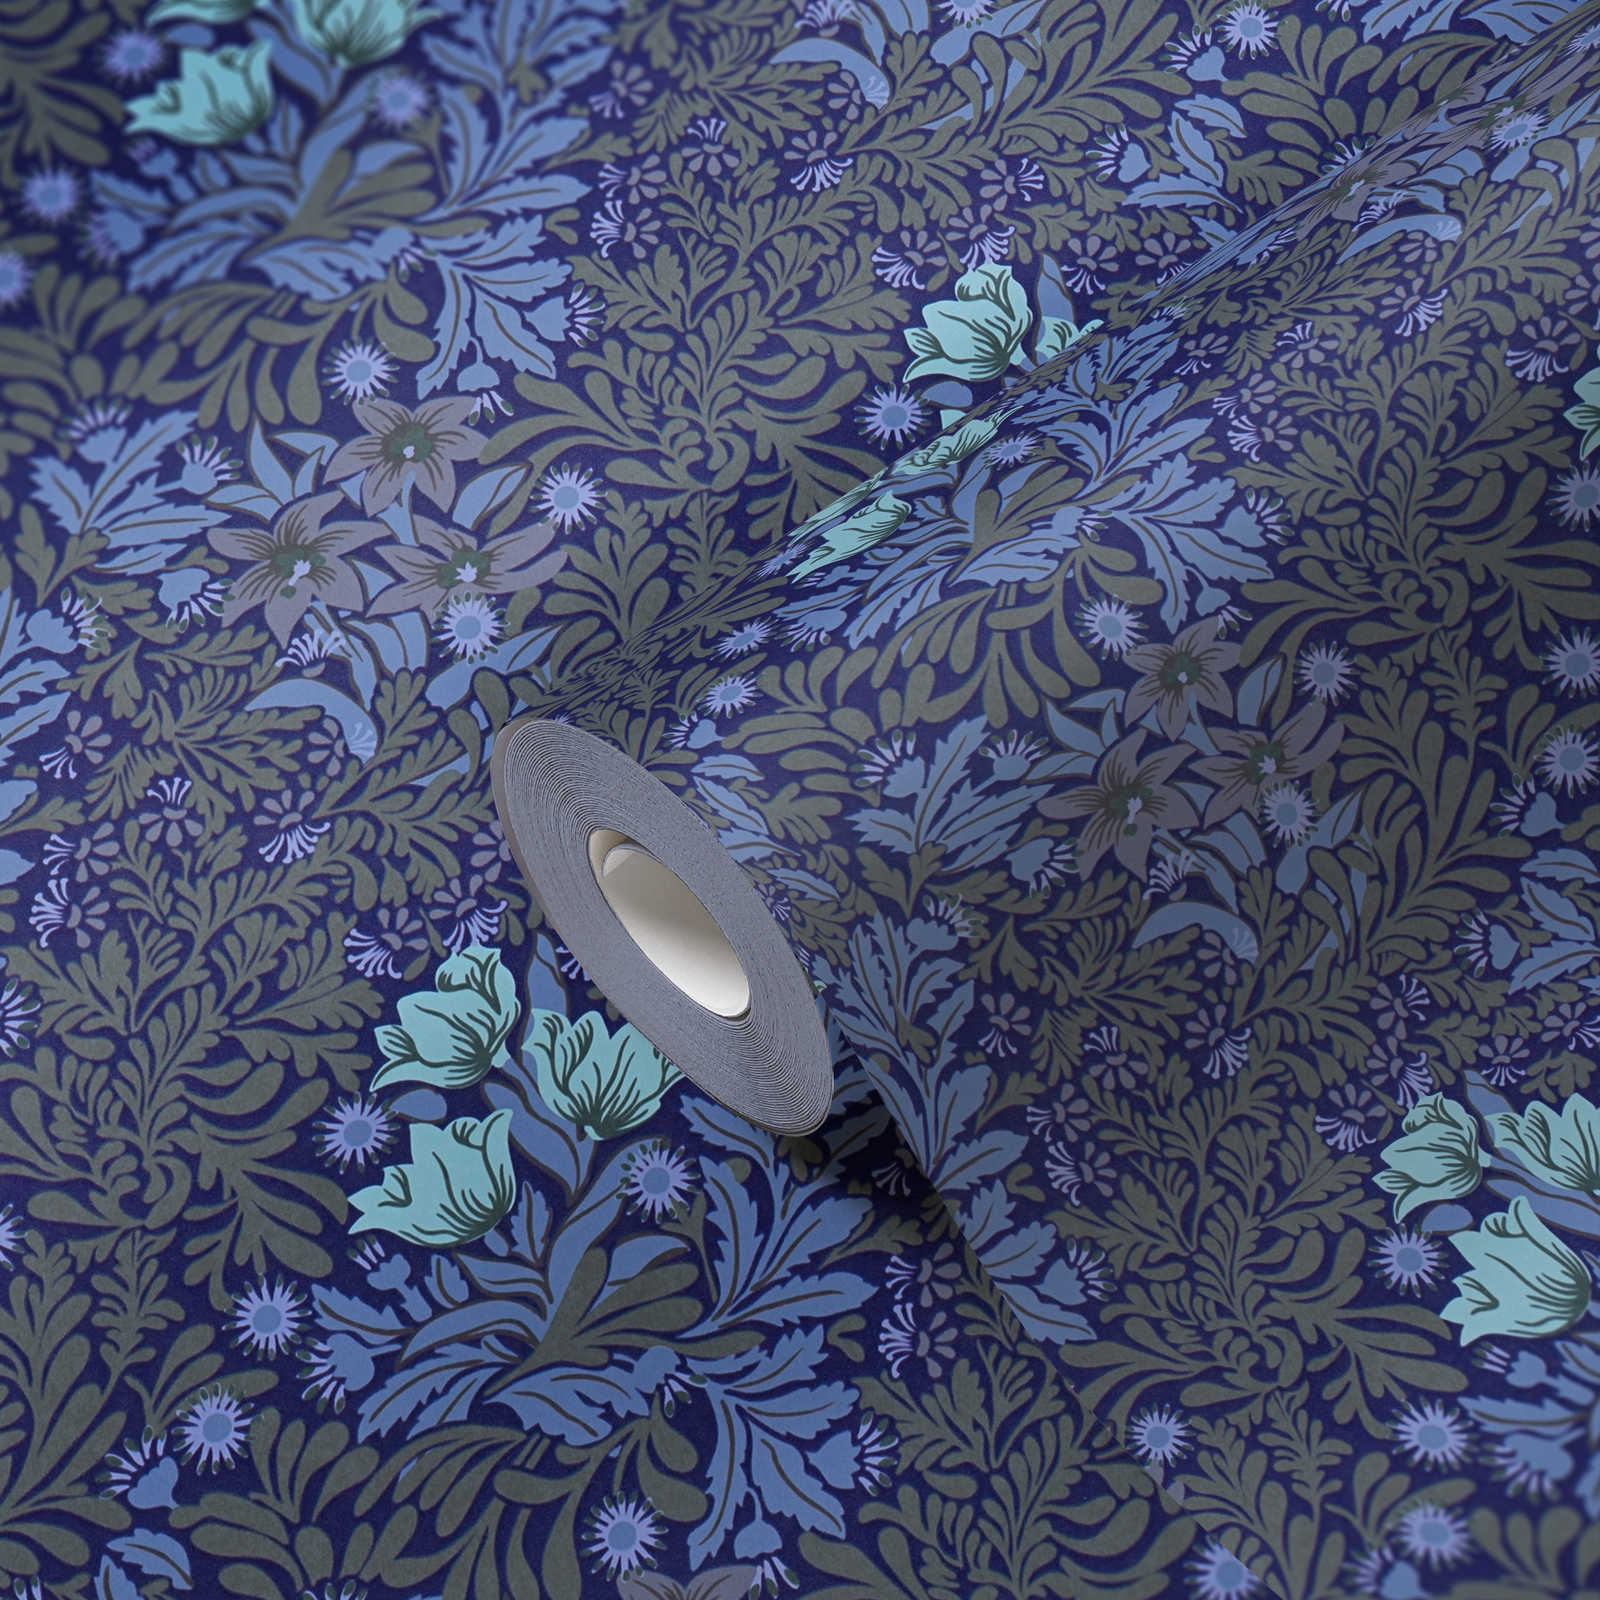             Papel pintado no tejido floral con zarcillos de hojas y flores - azul, gris, verde
        